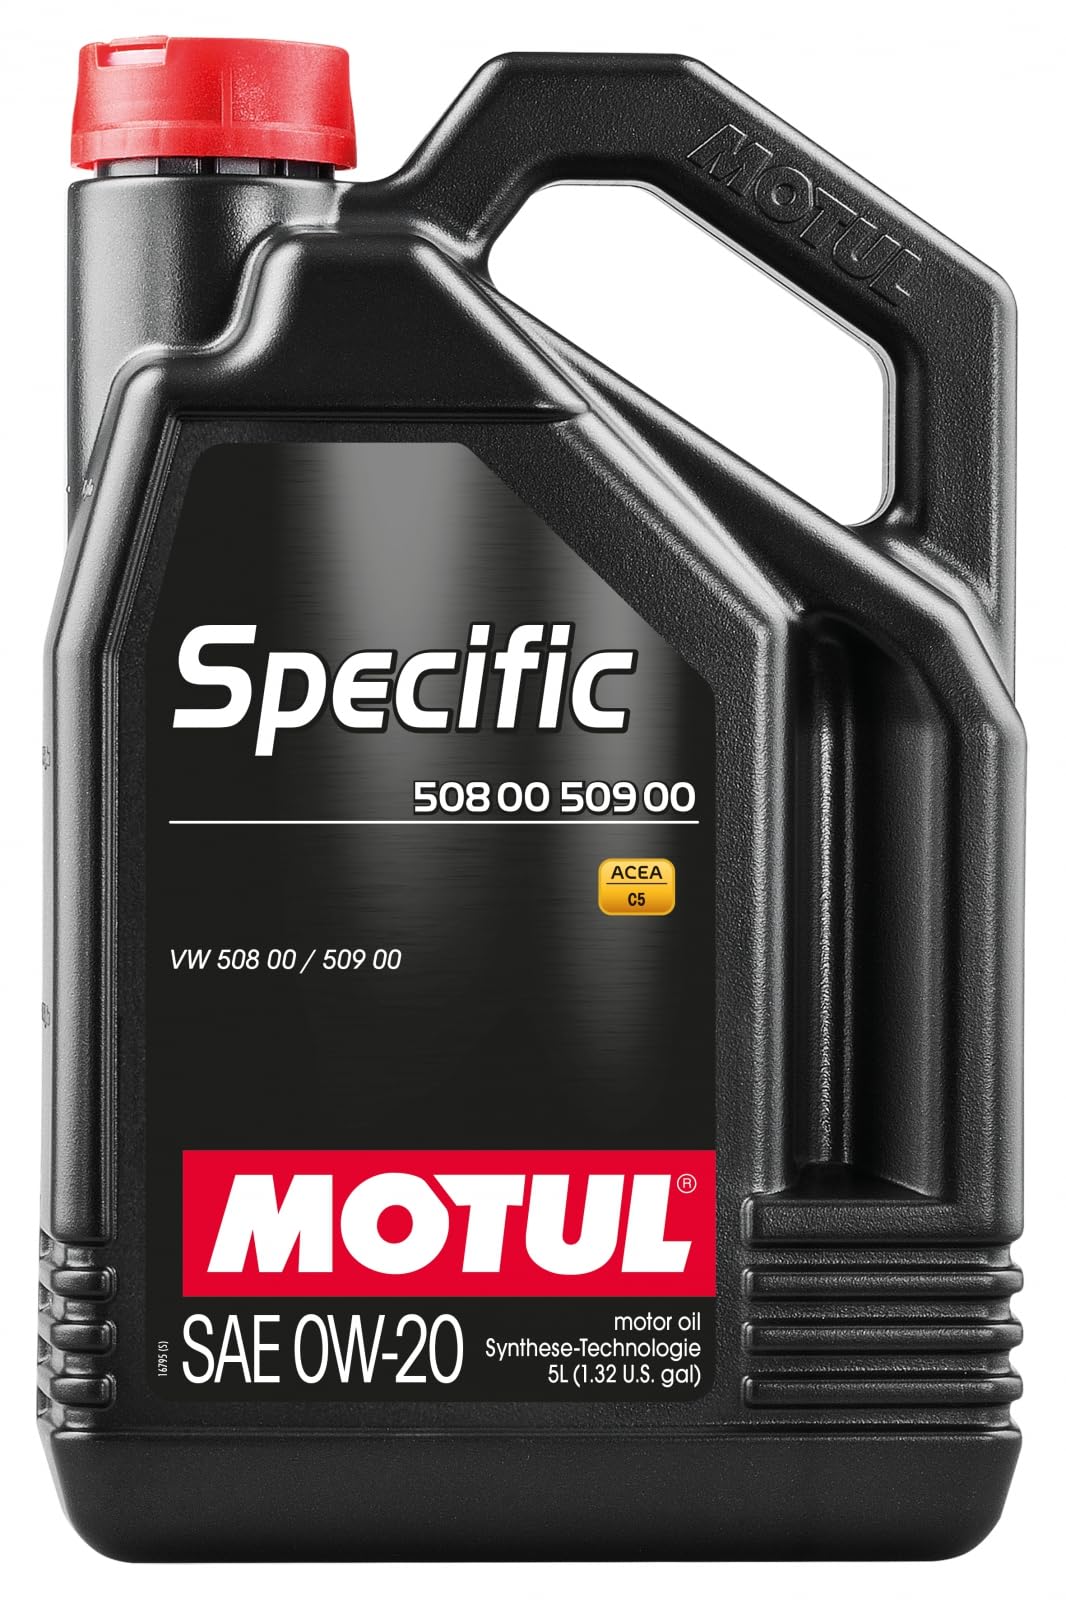 Motul Deutschland GmbH Motoröl Specific 508/509 00 0W-20 5L von MORFOSE